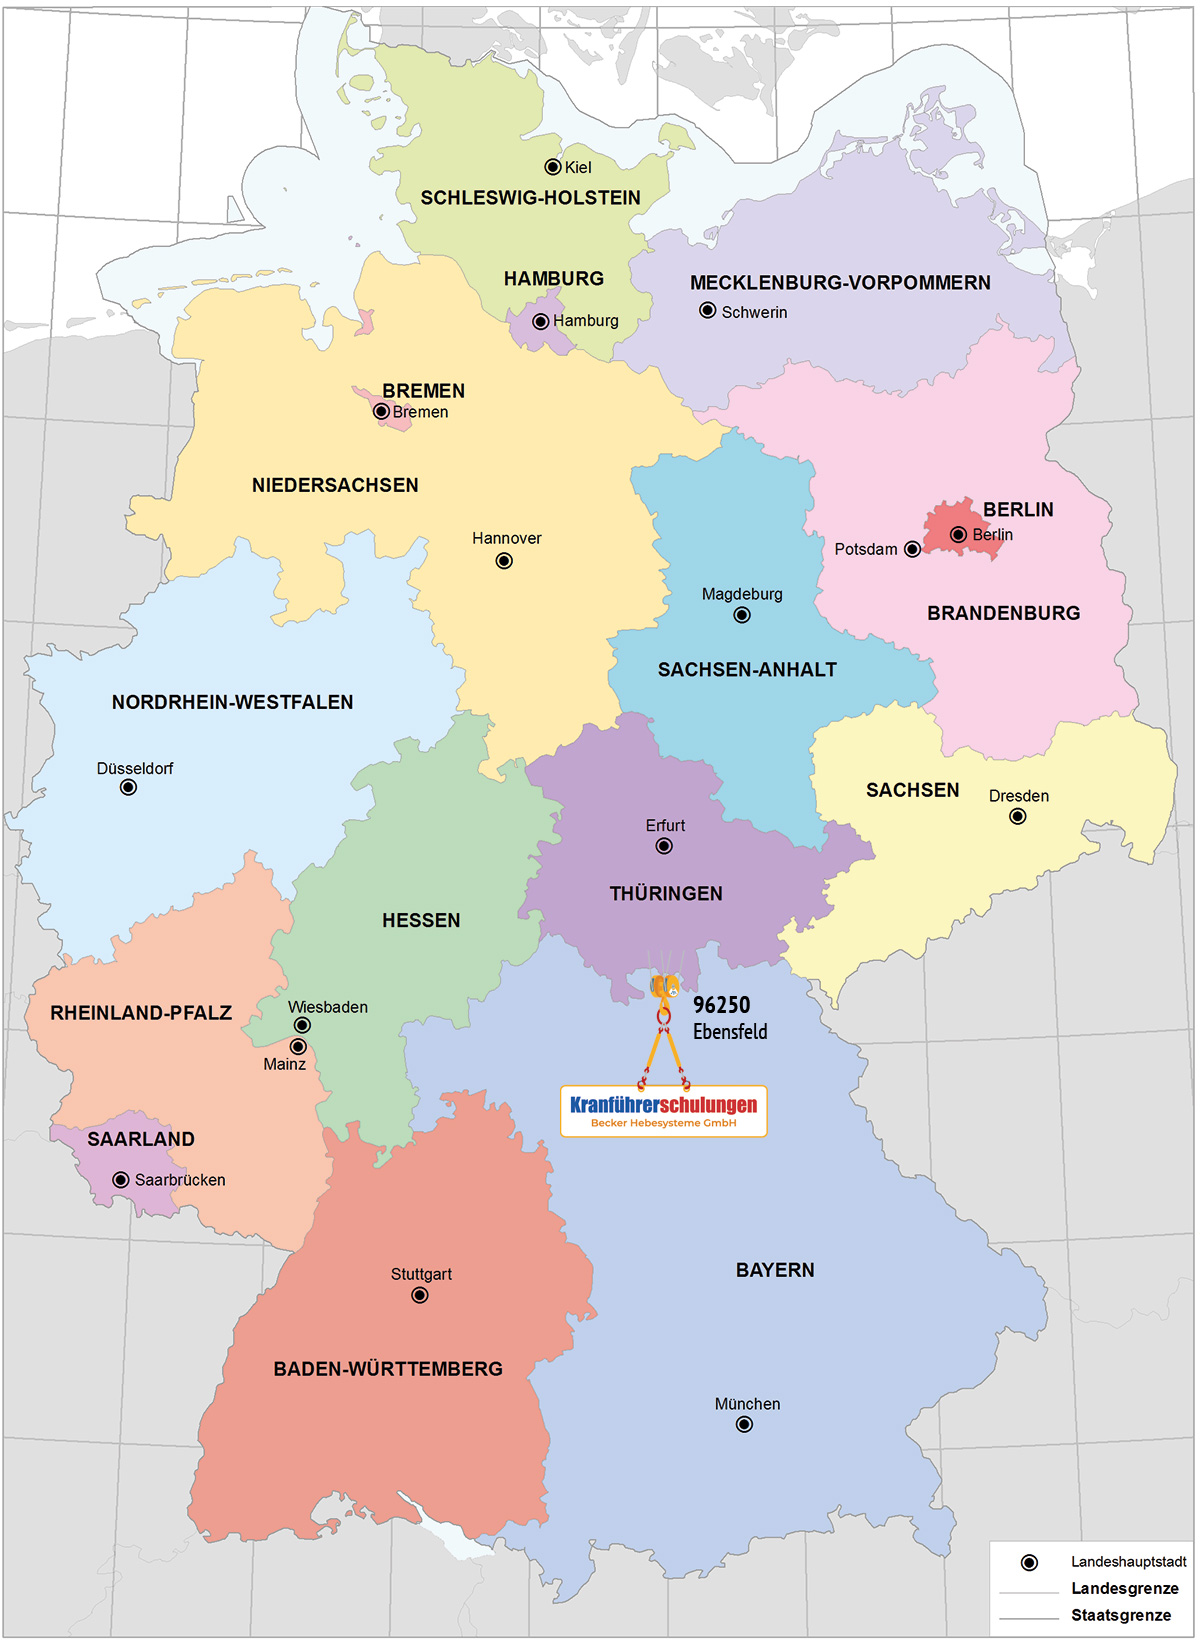 Kranführerschulungen in Bayern, Thüringen, Sachsen, Baden-Württemberg (BW), Hessen, Saarland, Rheinland-Pfalz (RP) und Nordrhein-Westfalen (NRW)